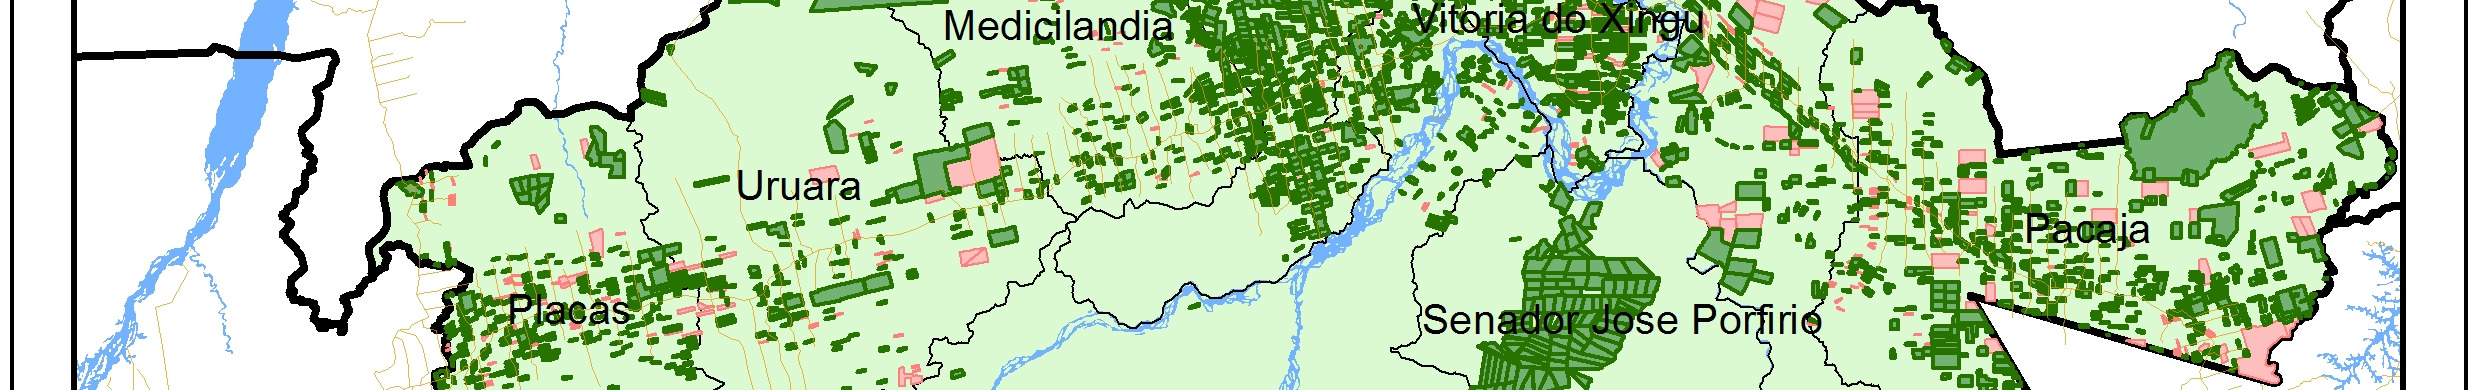 763 Vitória do Xingu 66.321 6.842 Região do Xingu 1.285.443 4.384 Estado do Pará 49.507.